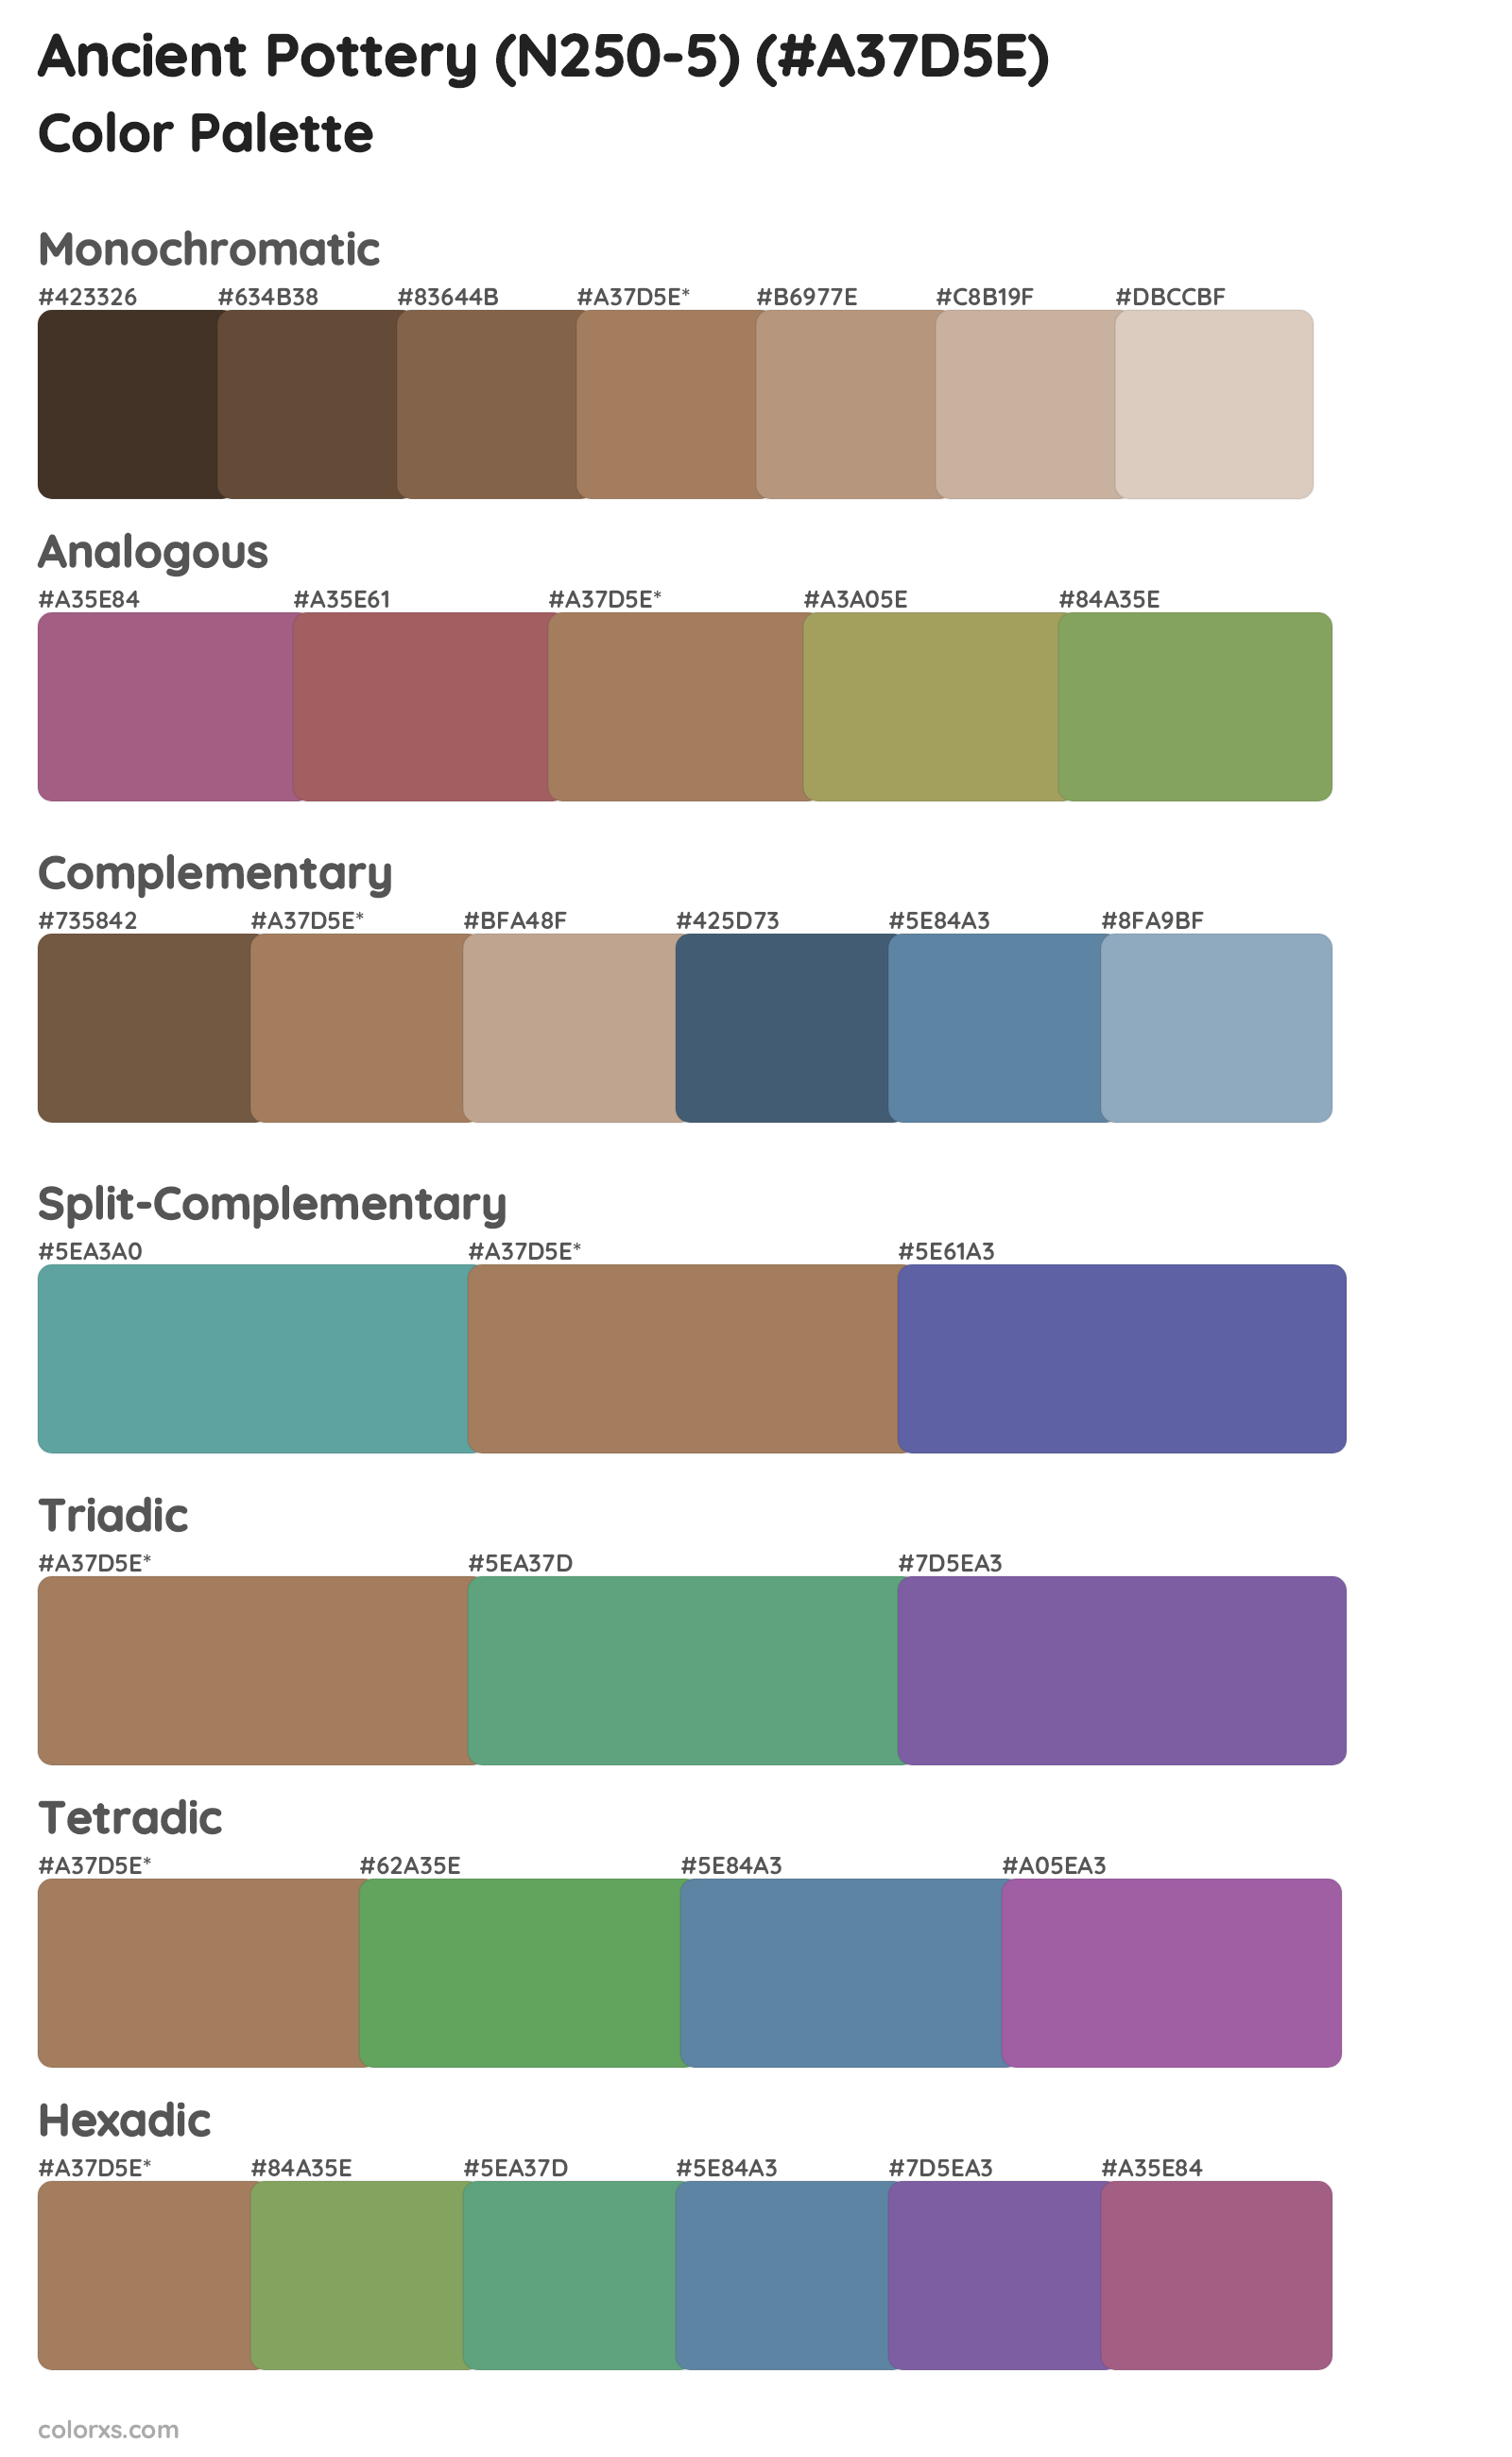 Ancient Pottery (N250-5) Color Scheme Palettes